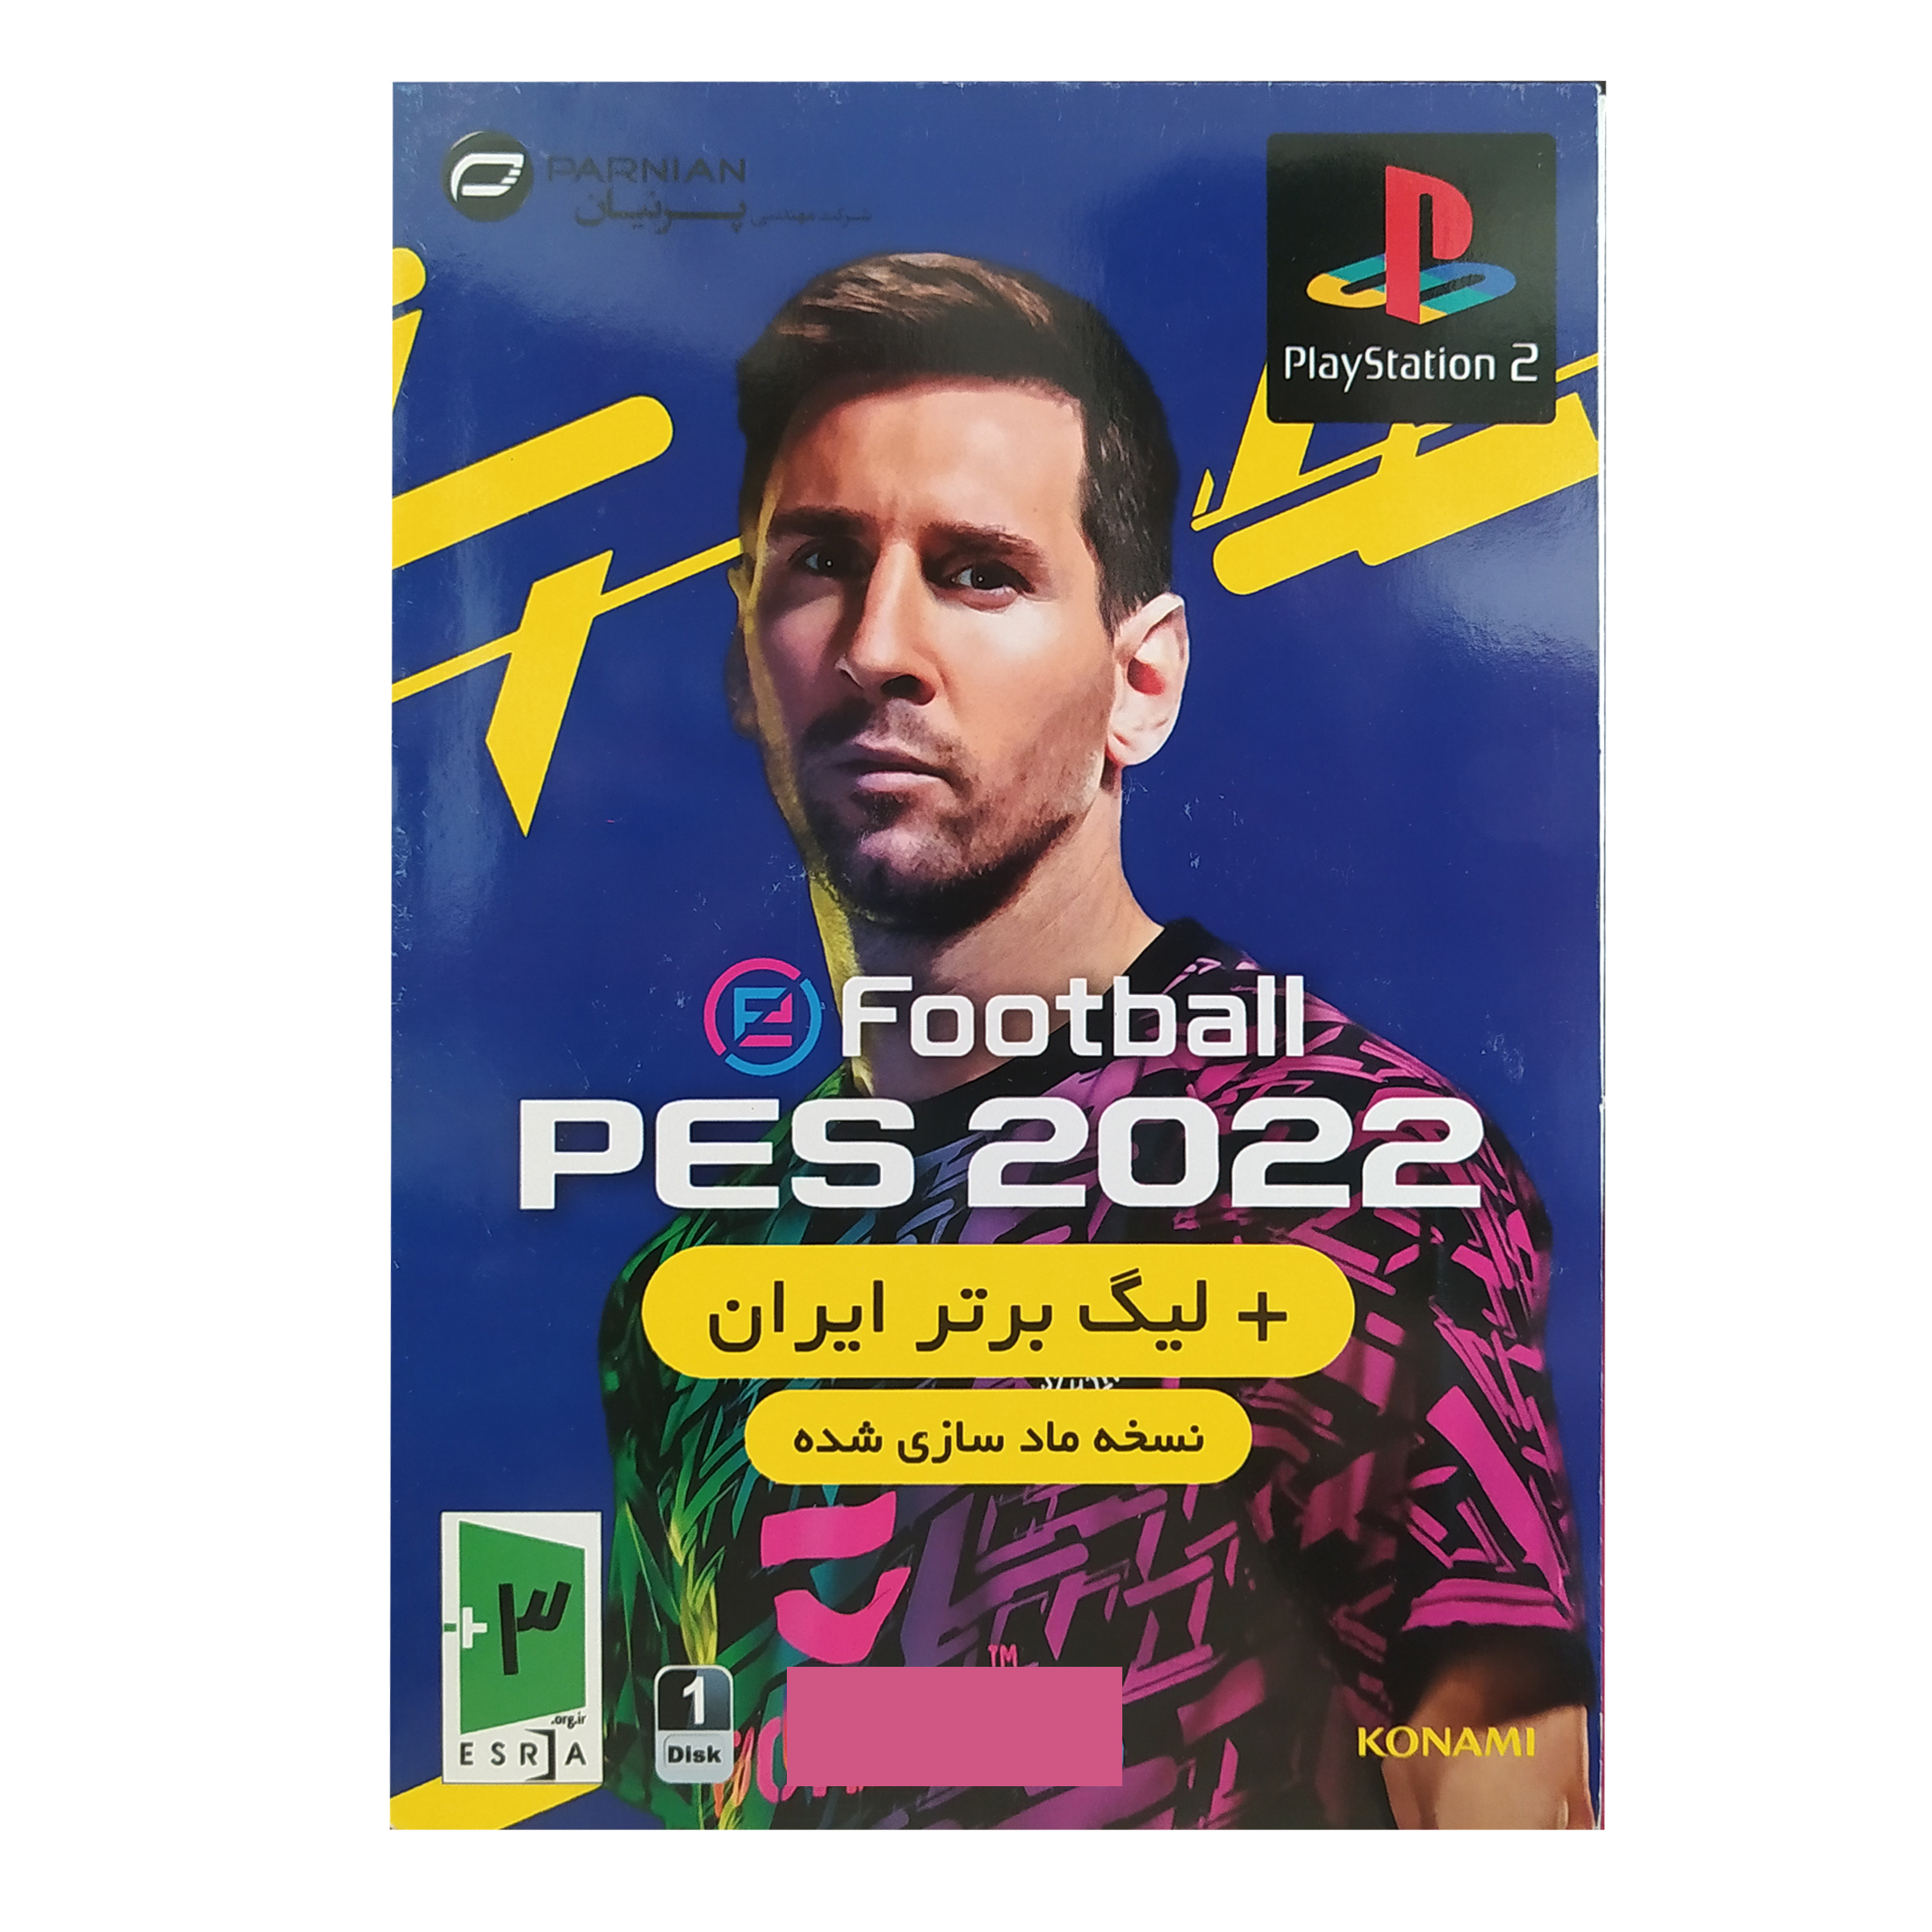 بازی PES 2022 + لیگ برتر ایران مخصوص PS2 نشر پرنیان